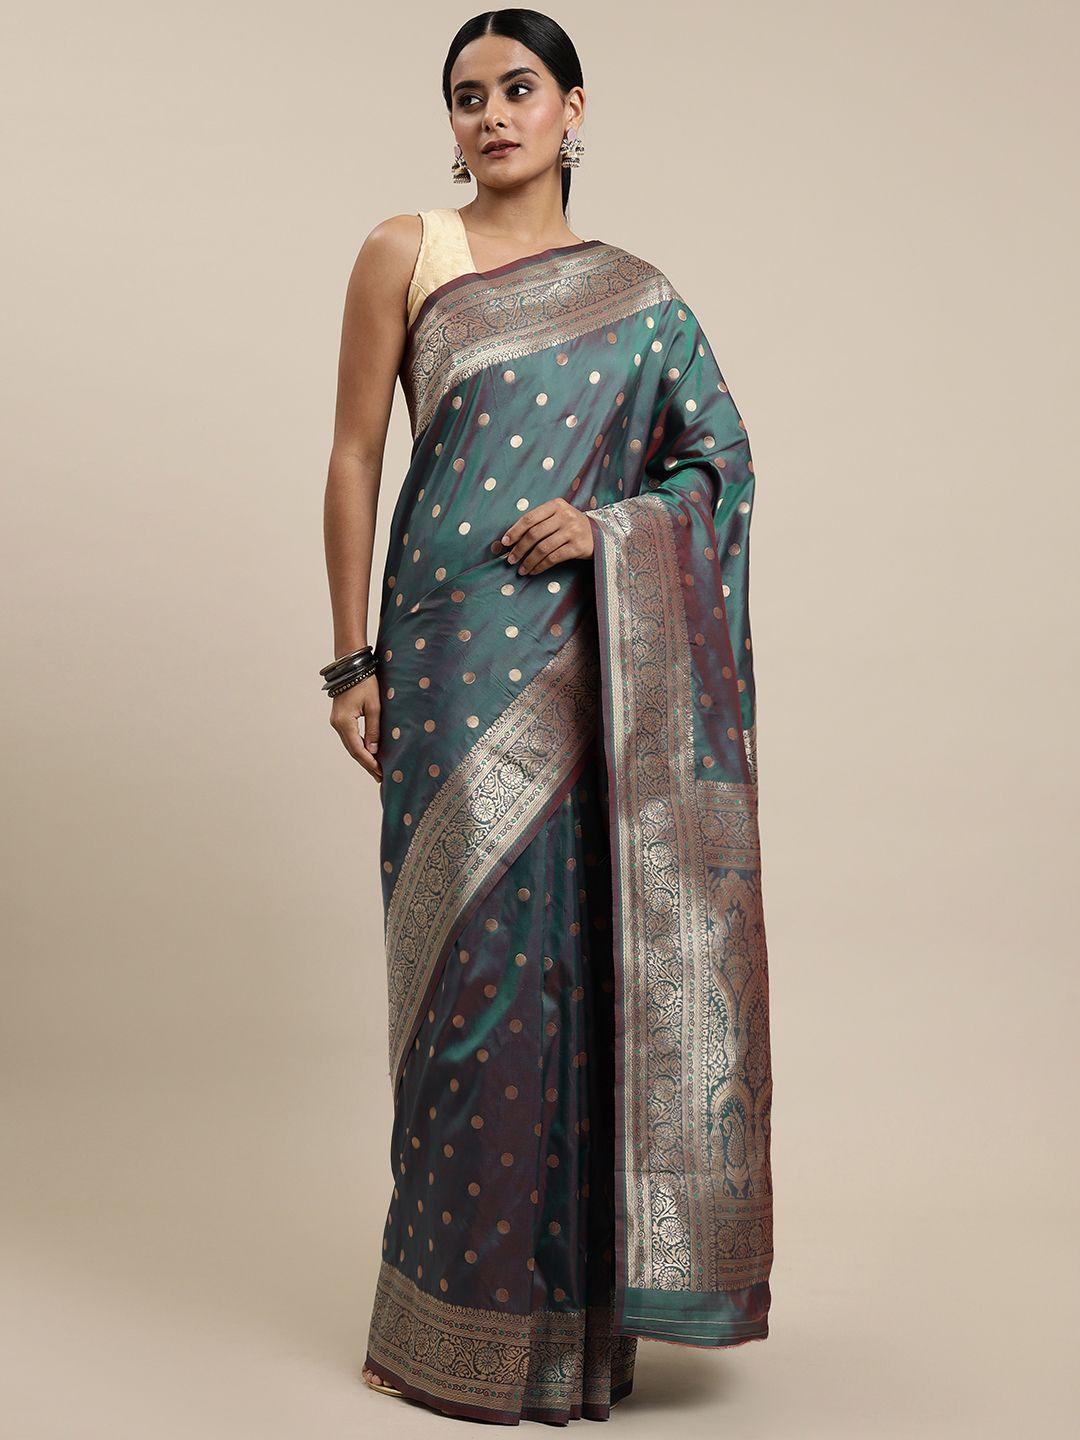 royal rajgharana saree teal green & golden woven design silk blend paithani sarees